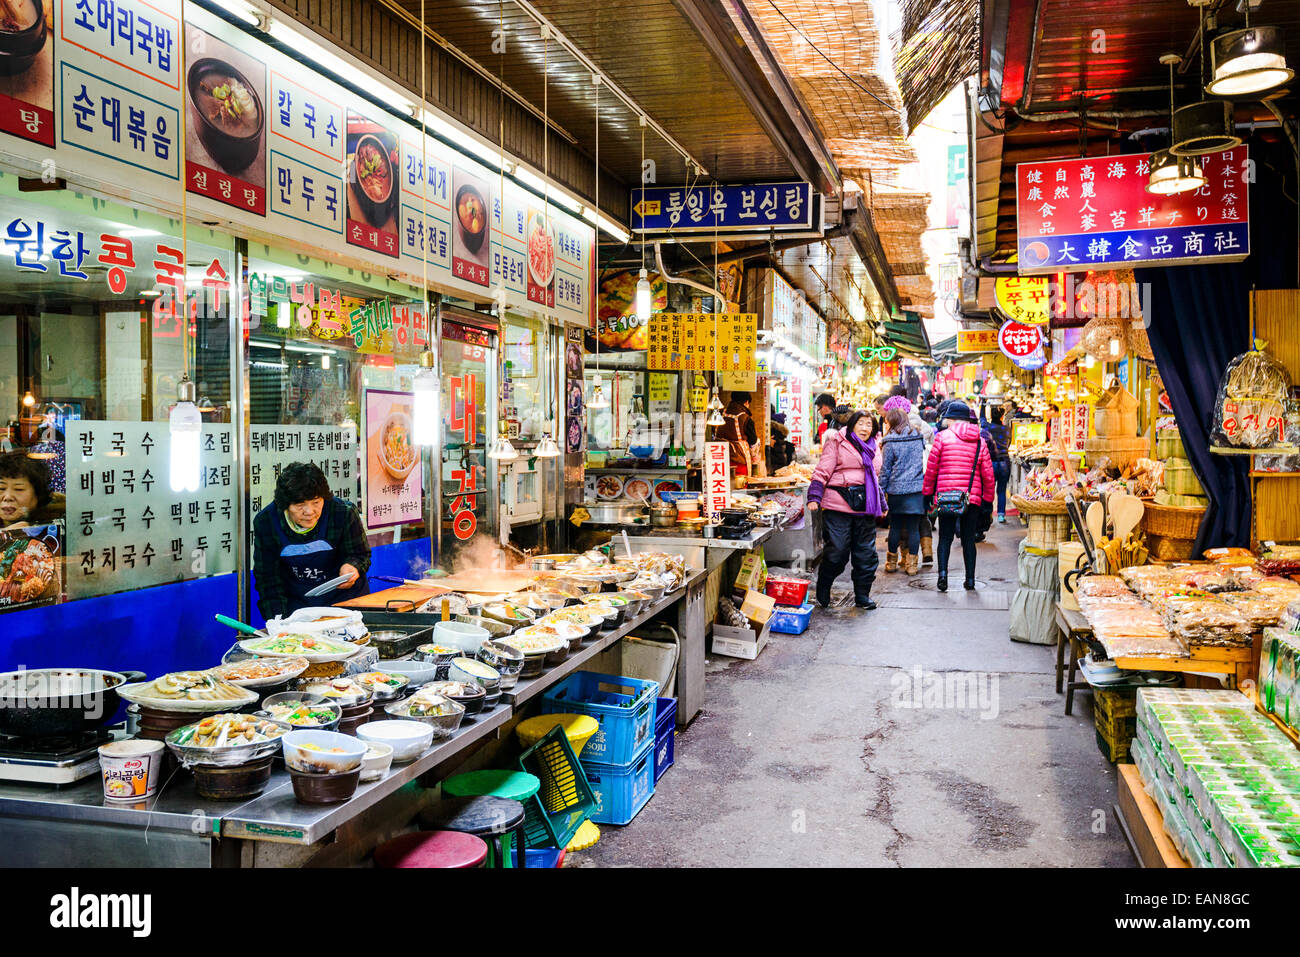 Les consommateurs passent par le marché de Dongdaemun. Le marché est une populaire destination touristique et commercial. Banque D'Images